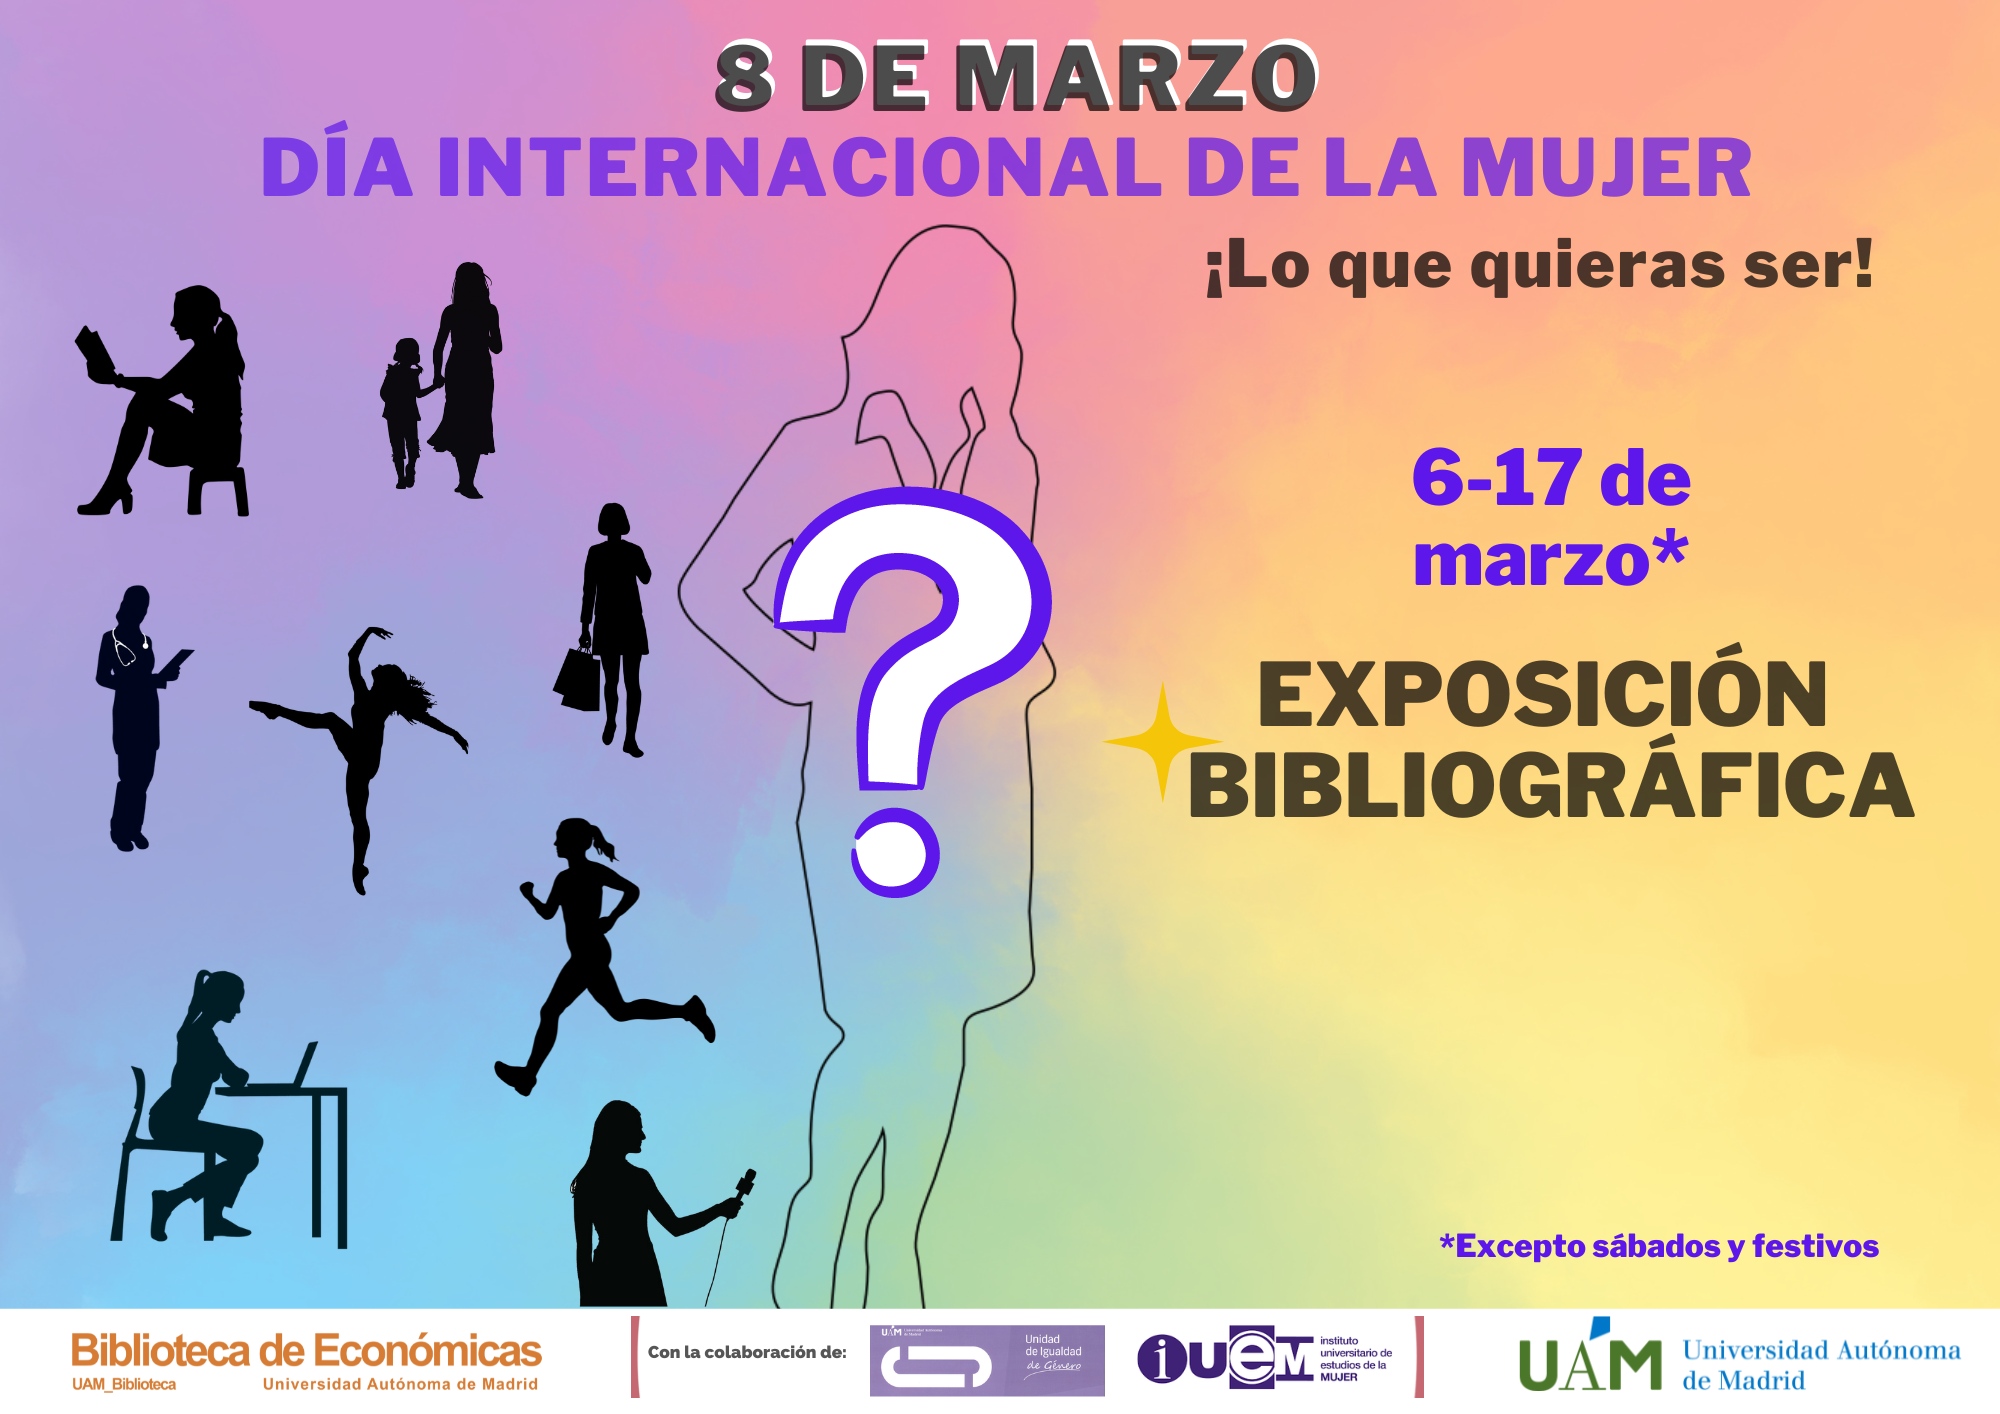 Cartel anunciando la exposición bibliográfica en conmemoración del Día Internacional de la Mujer 2023